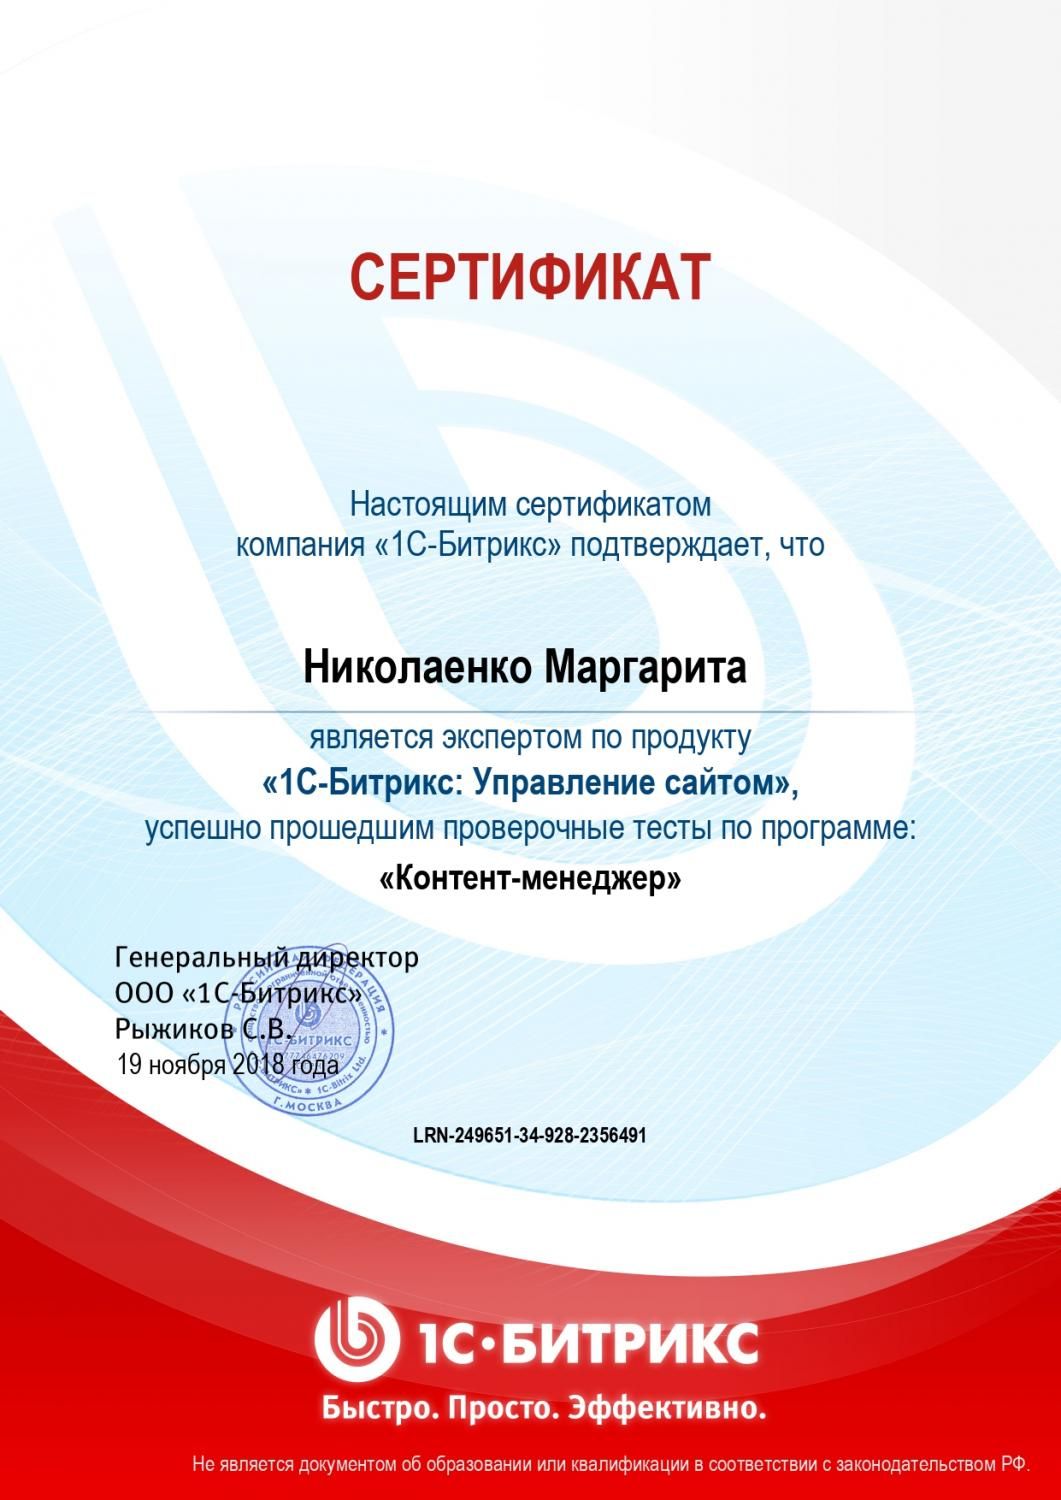 Сертификат эксперта по программе "Контент-менеджер" - Николаенко М. в Ярославля